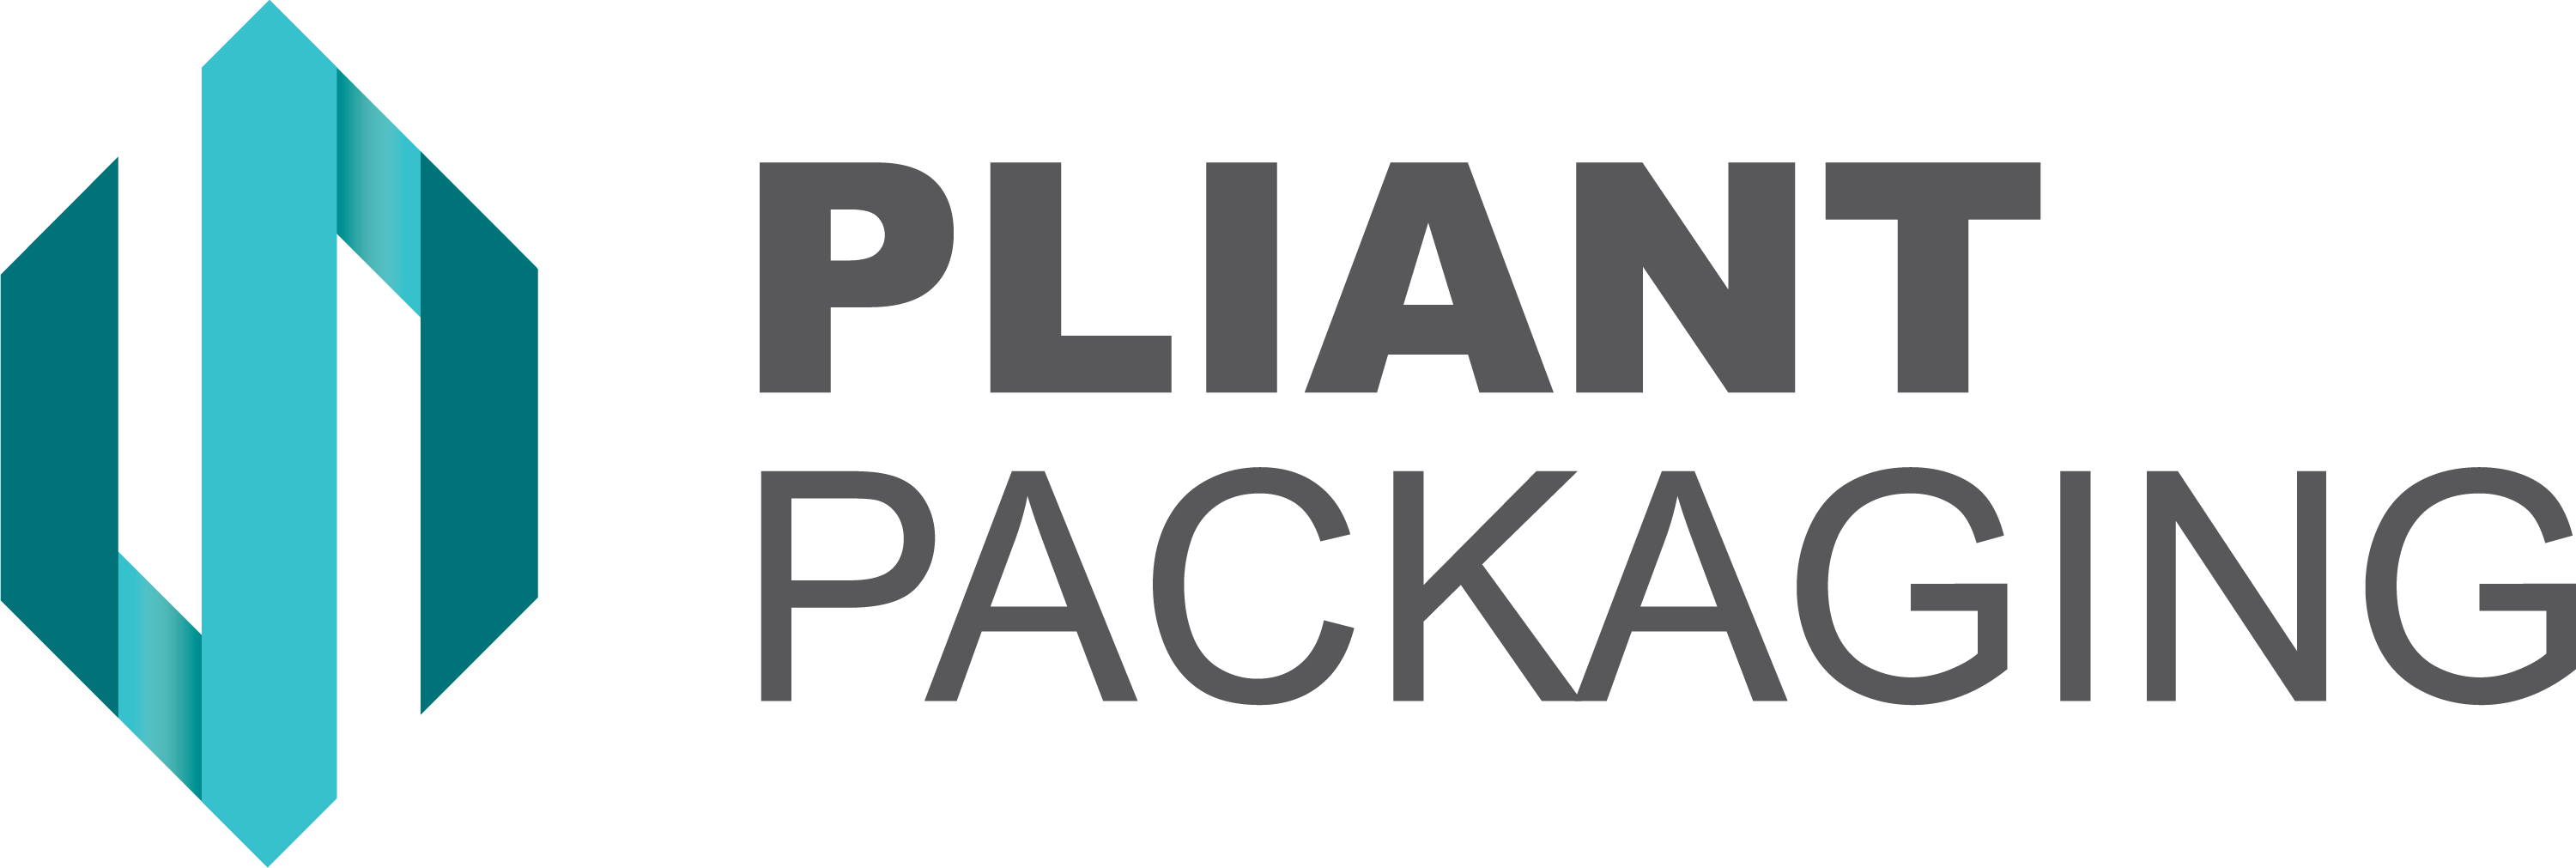 Pliant Packaging